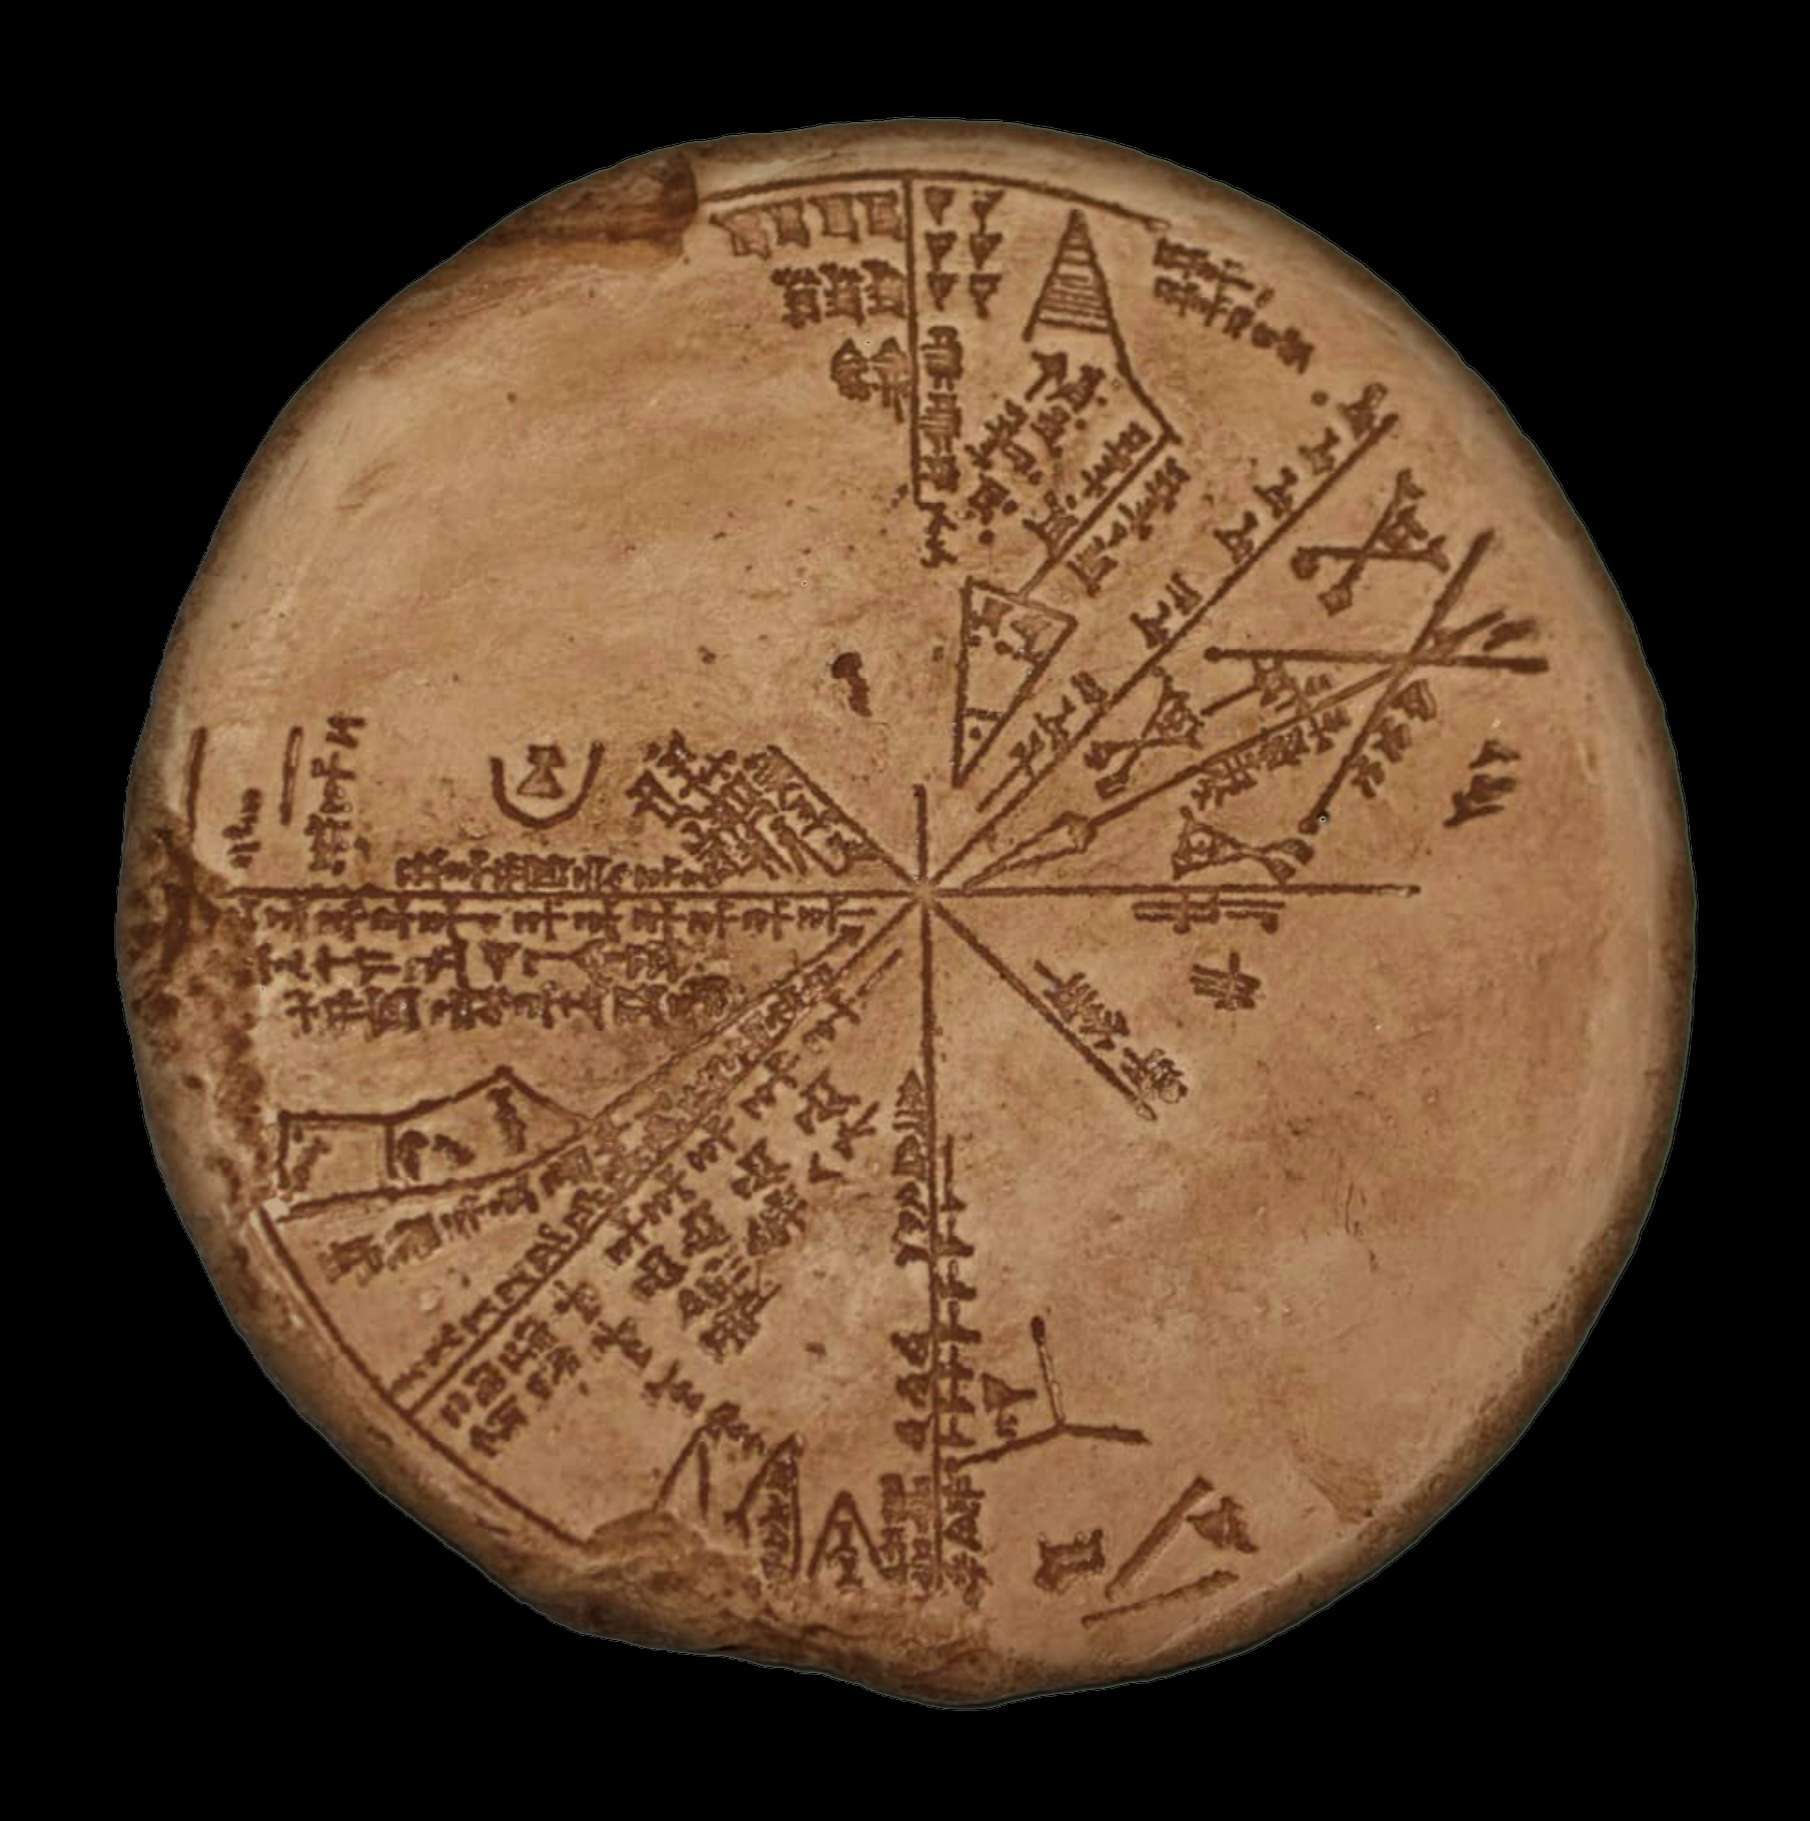 הפלניספירה השומרית | לוח הקוניפורם באוסף המוזיאון הבריטי No K8538